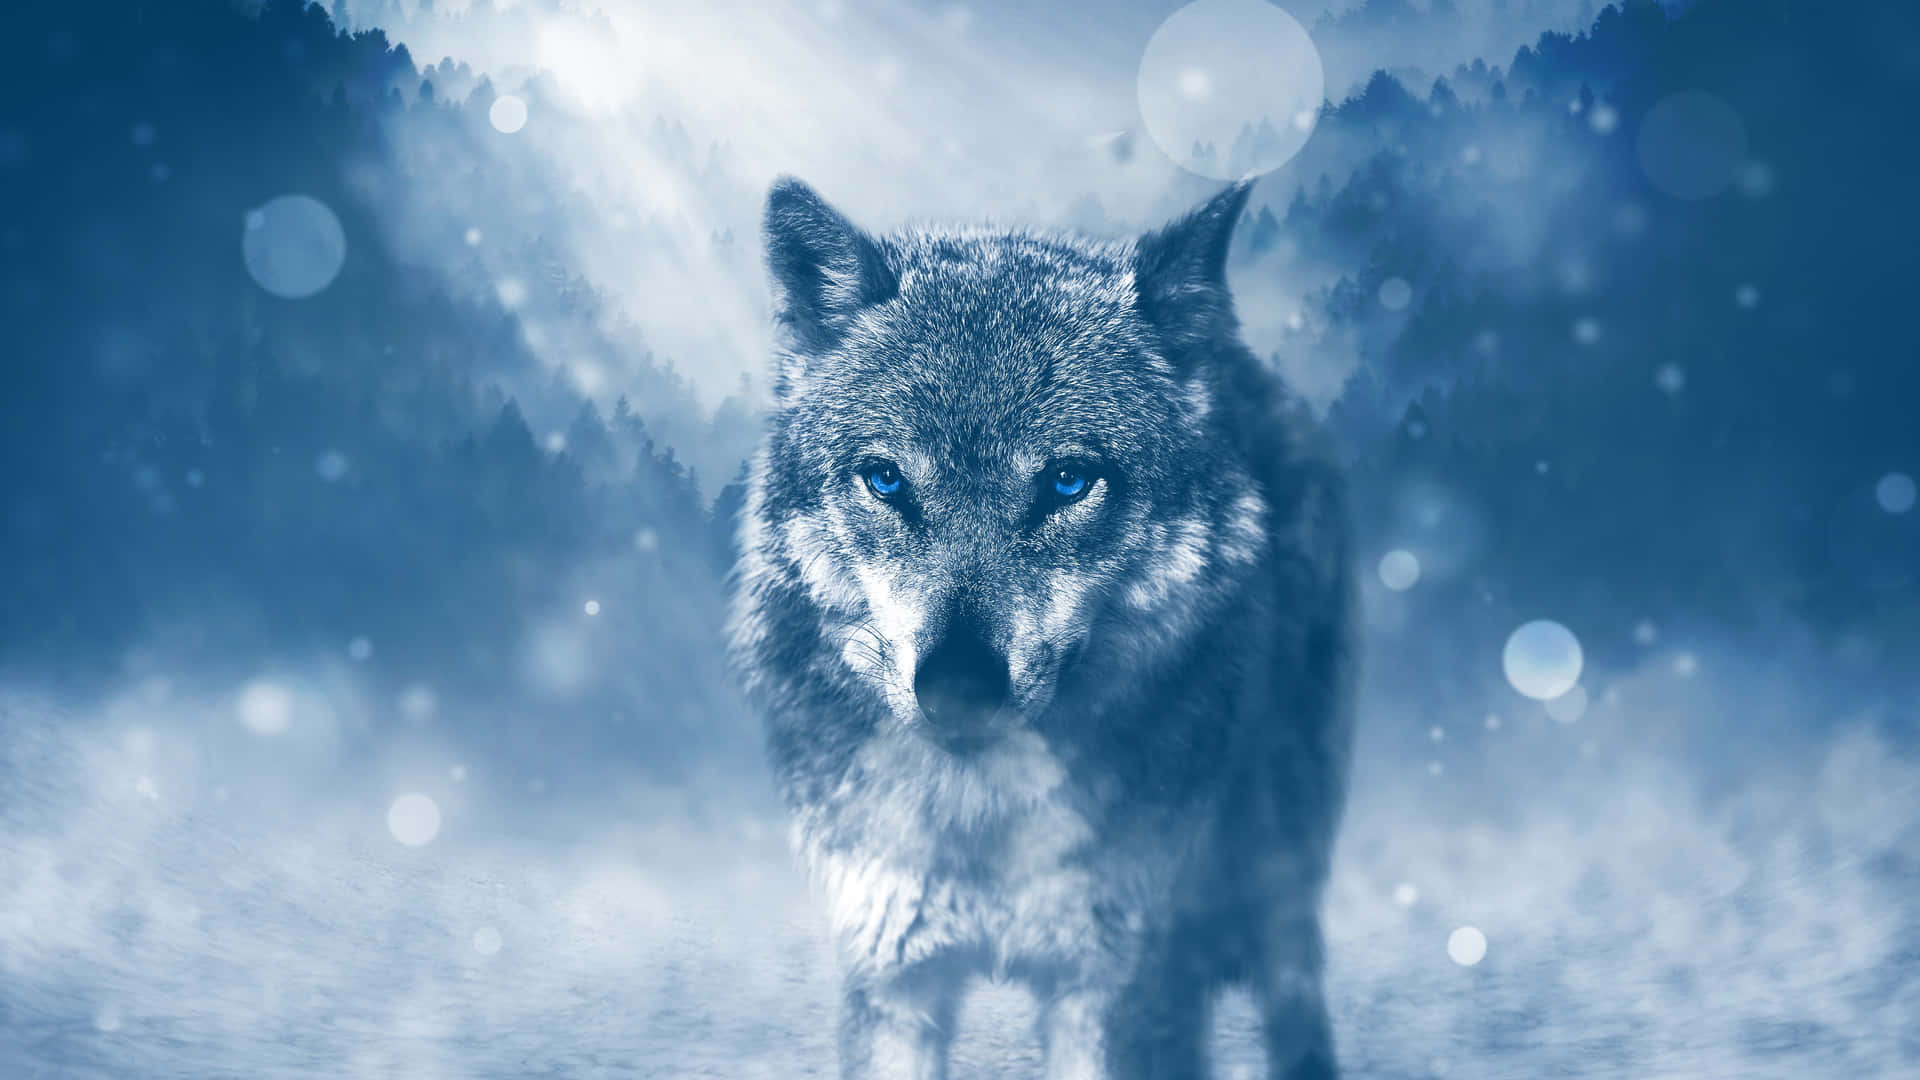 Majestic Lone Wolf in Moonlight Wallpaper